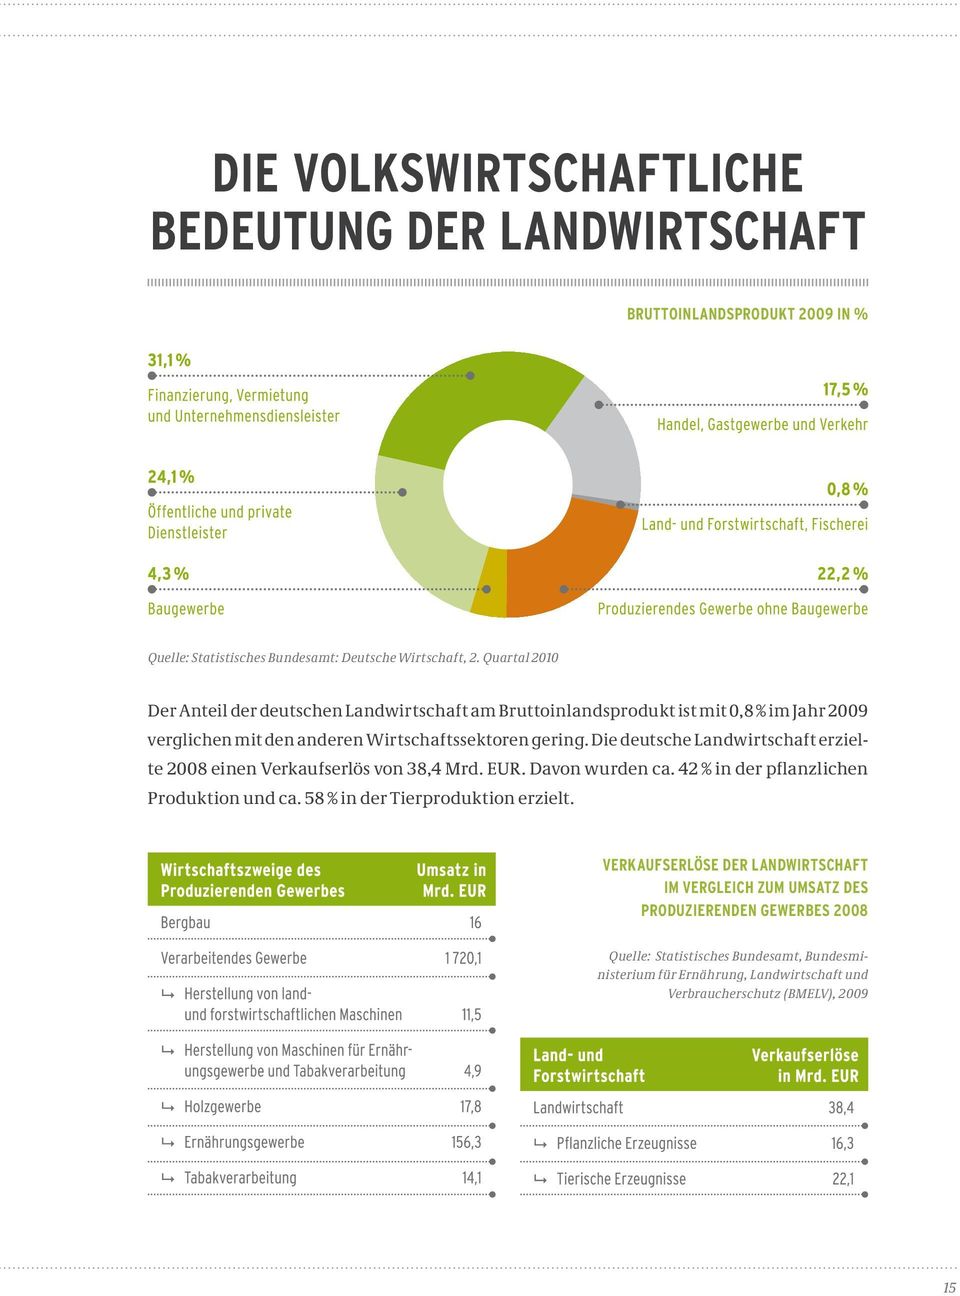 Die deutsche Landwirtschaft erzielte 2008 einen Verkaufserlös von 38,4 Mrd. EUR. Davon wurden ca. 42 % in der pflanzlichen Produktion und ca.